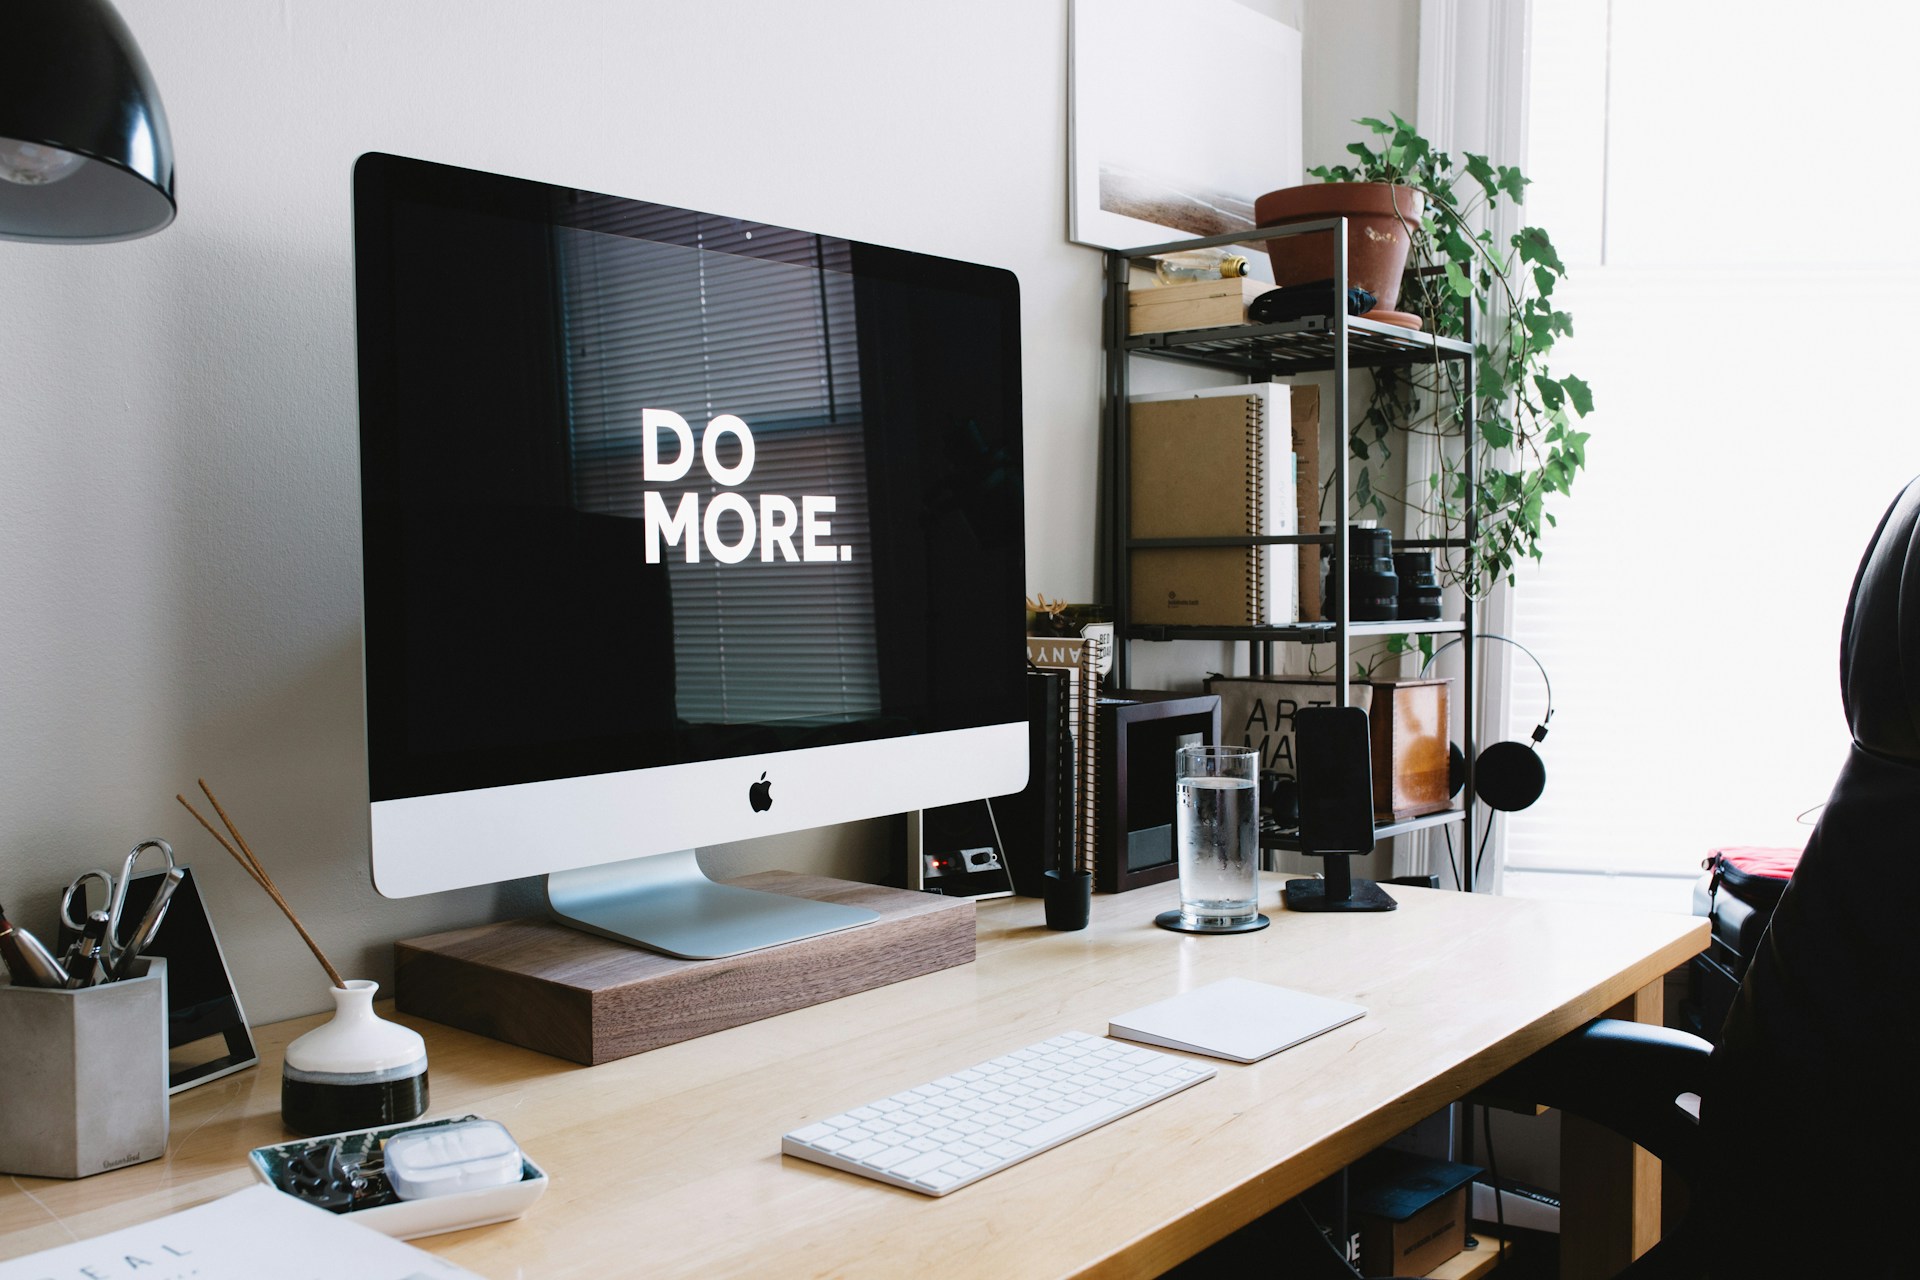 Een foto van een bureau met daarop een scherm waarop staat 'Do more'. Het representeert de tips om productief te werken.